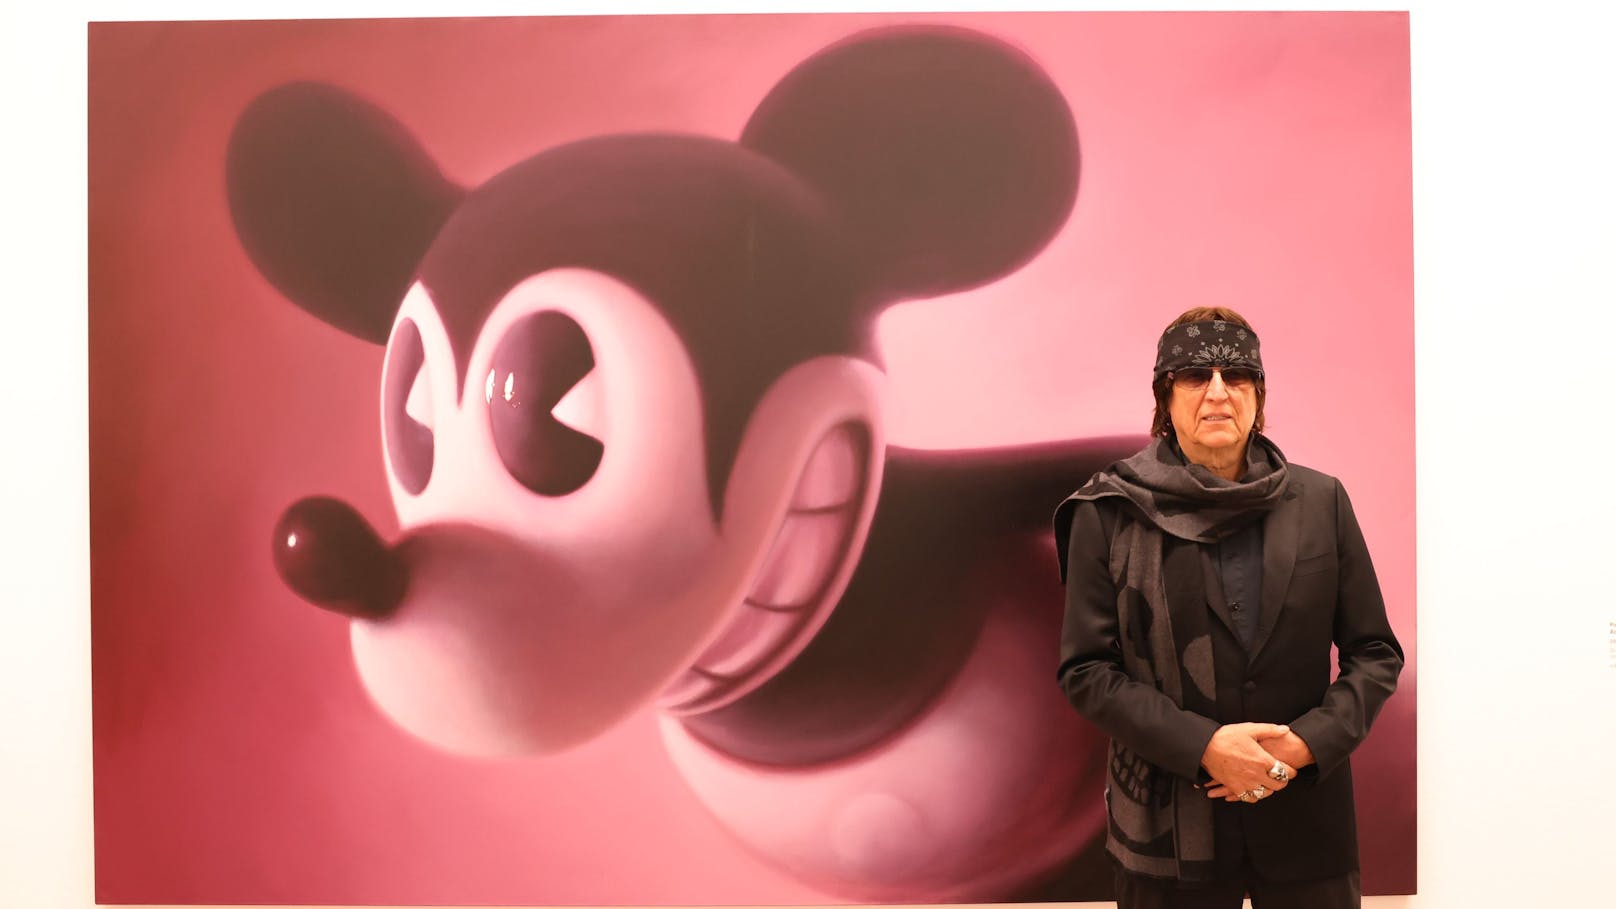 Helnwein-Gemälde in Wien für Rekordpreis versteigert